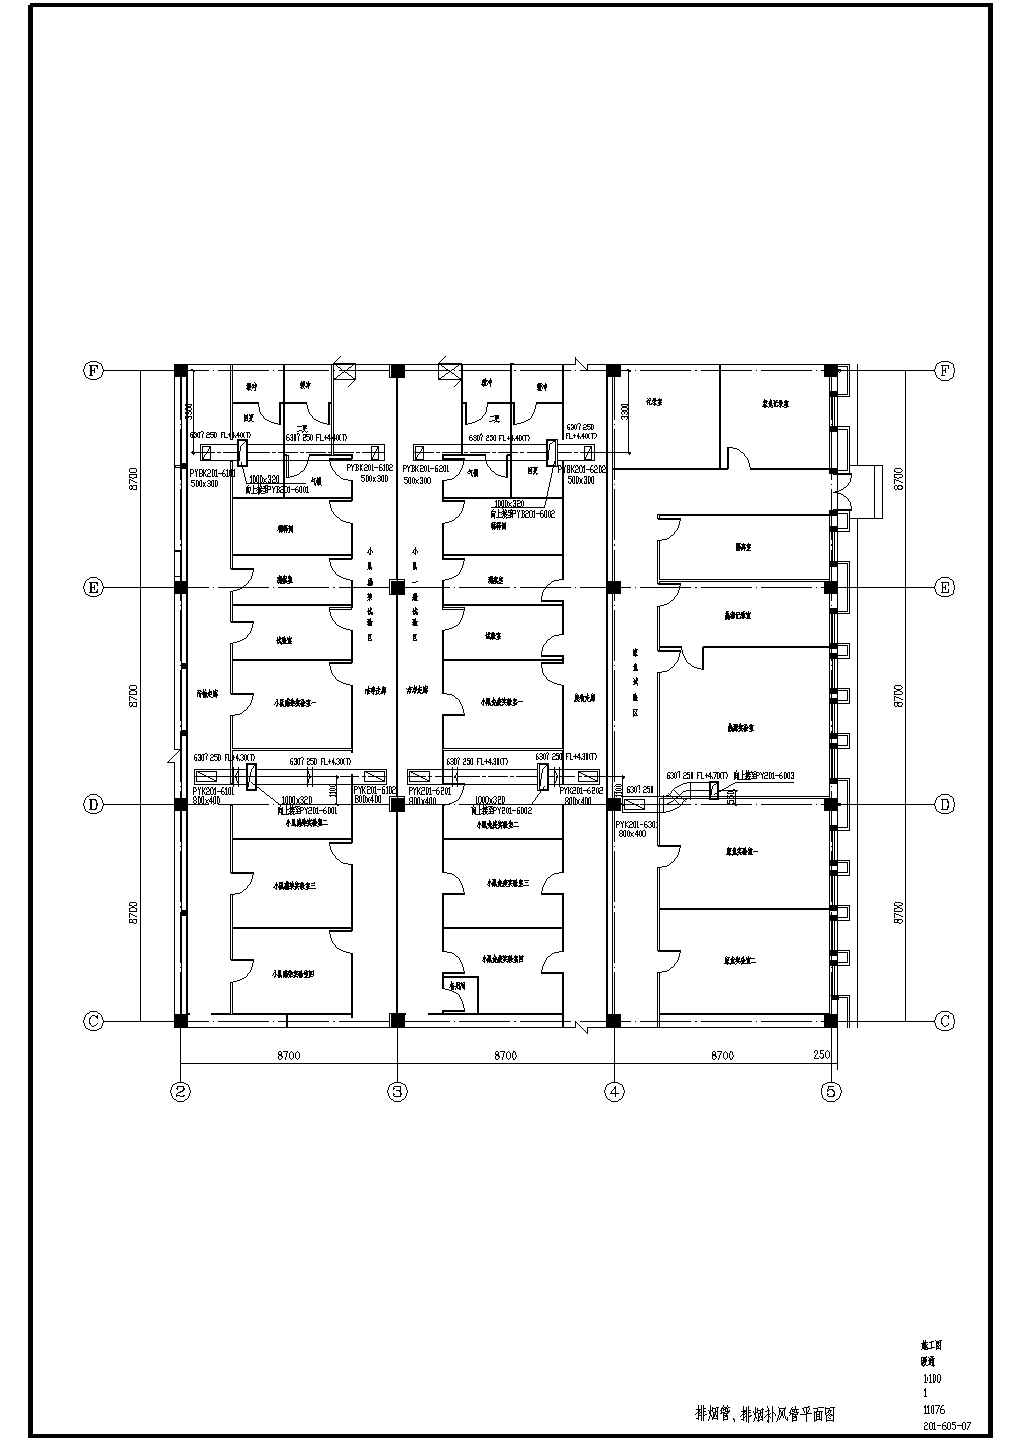 【吉林】厂房建筑暖通空调系统全套设计施工图（含控制点流程图）